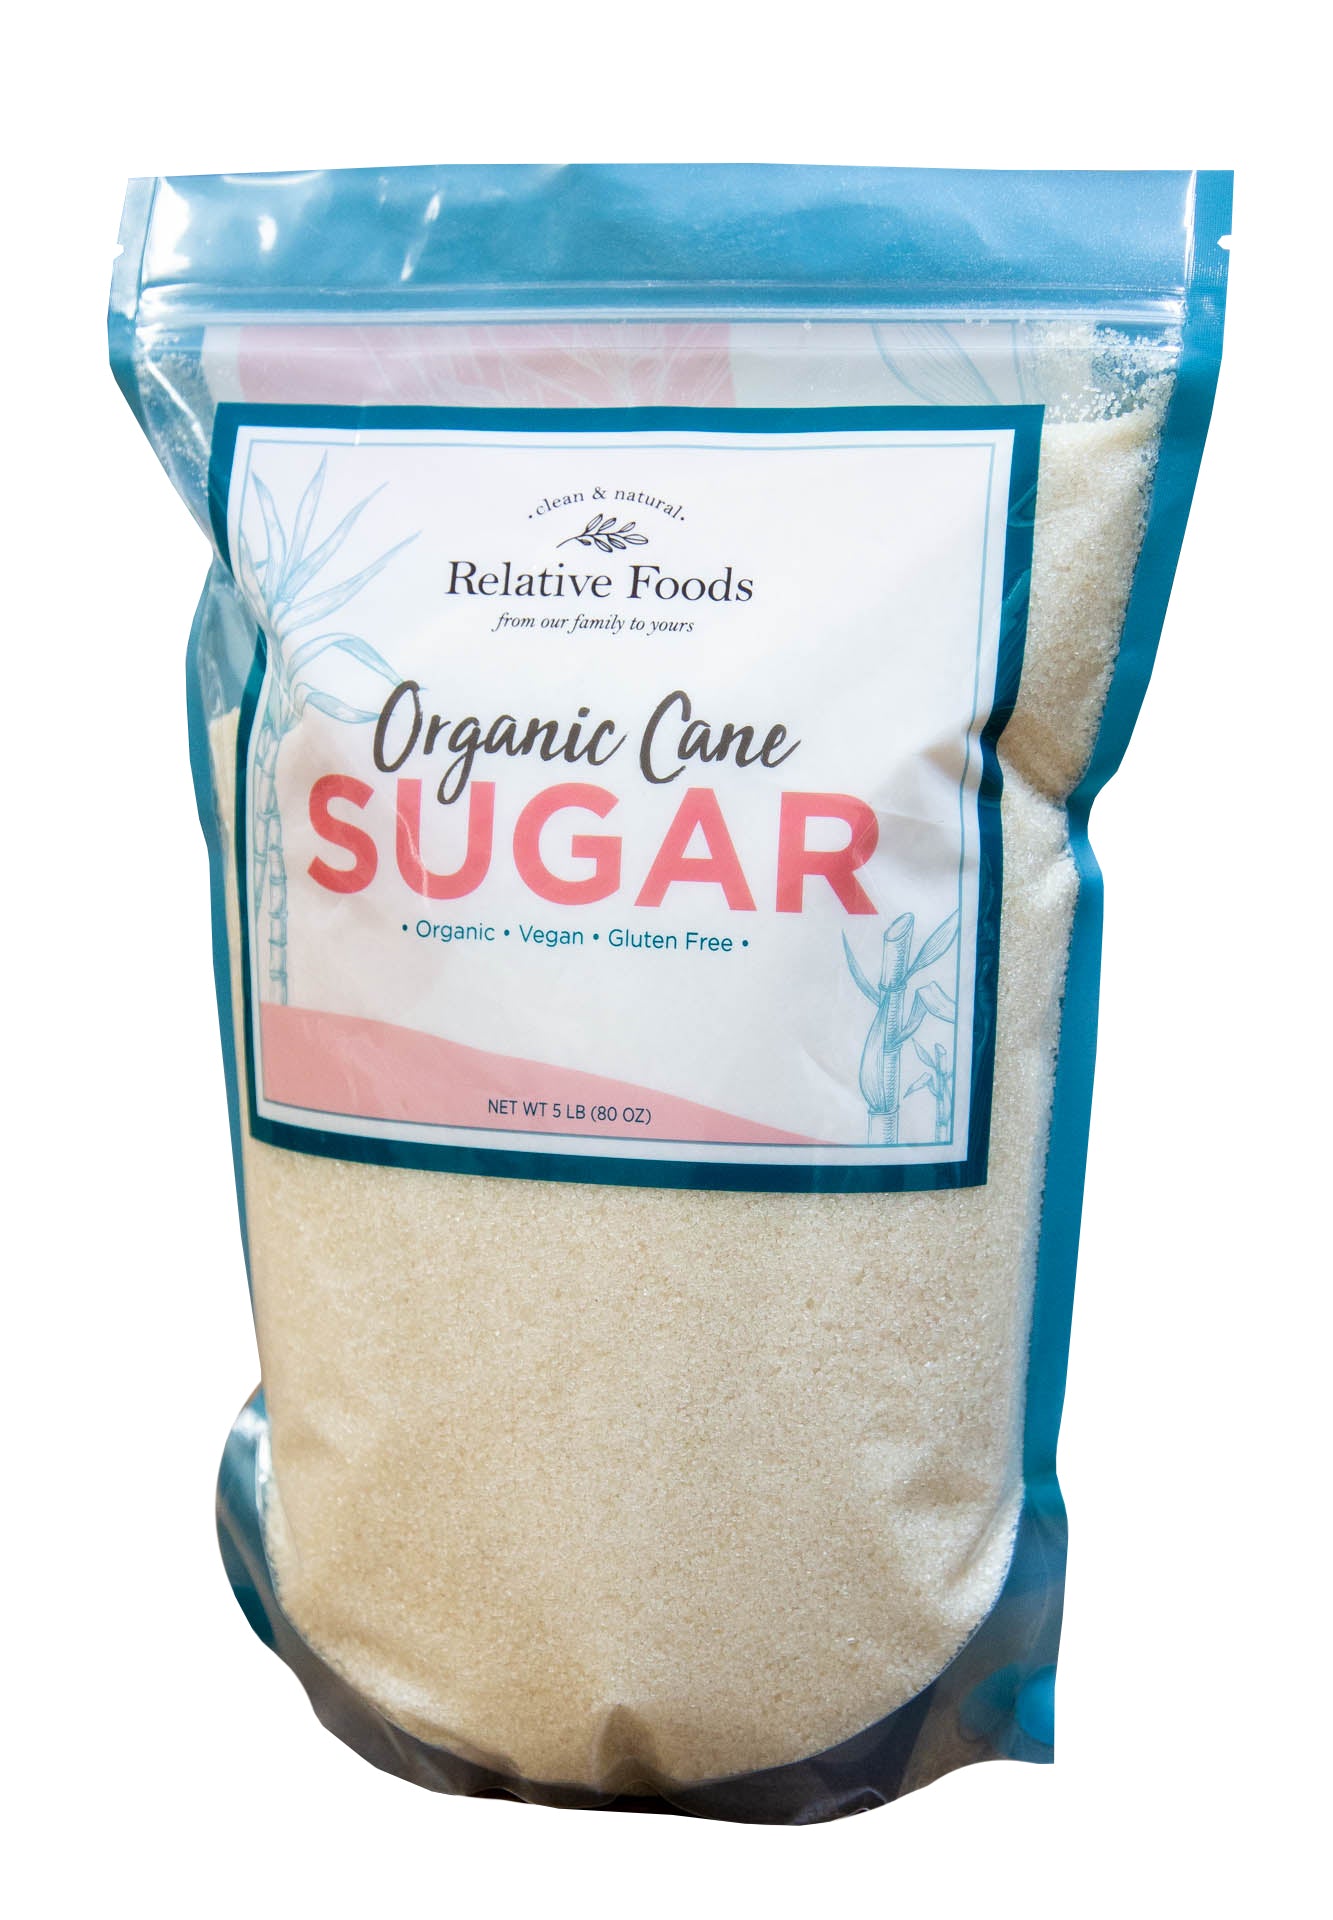 Cane Sugar - Organic, Gluten Free, Non-GMO - 5 Lbs.